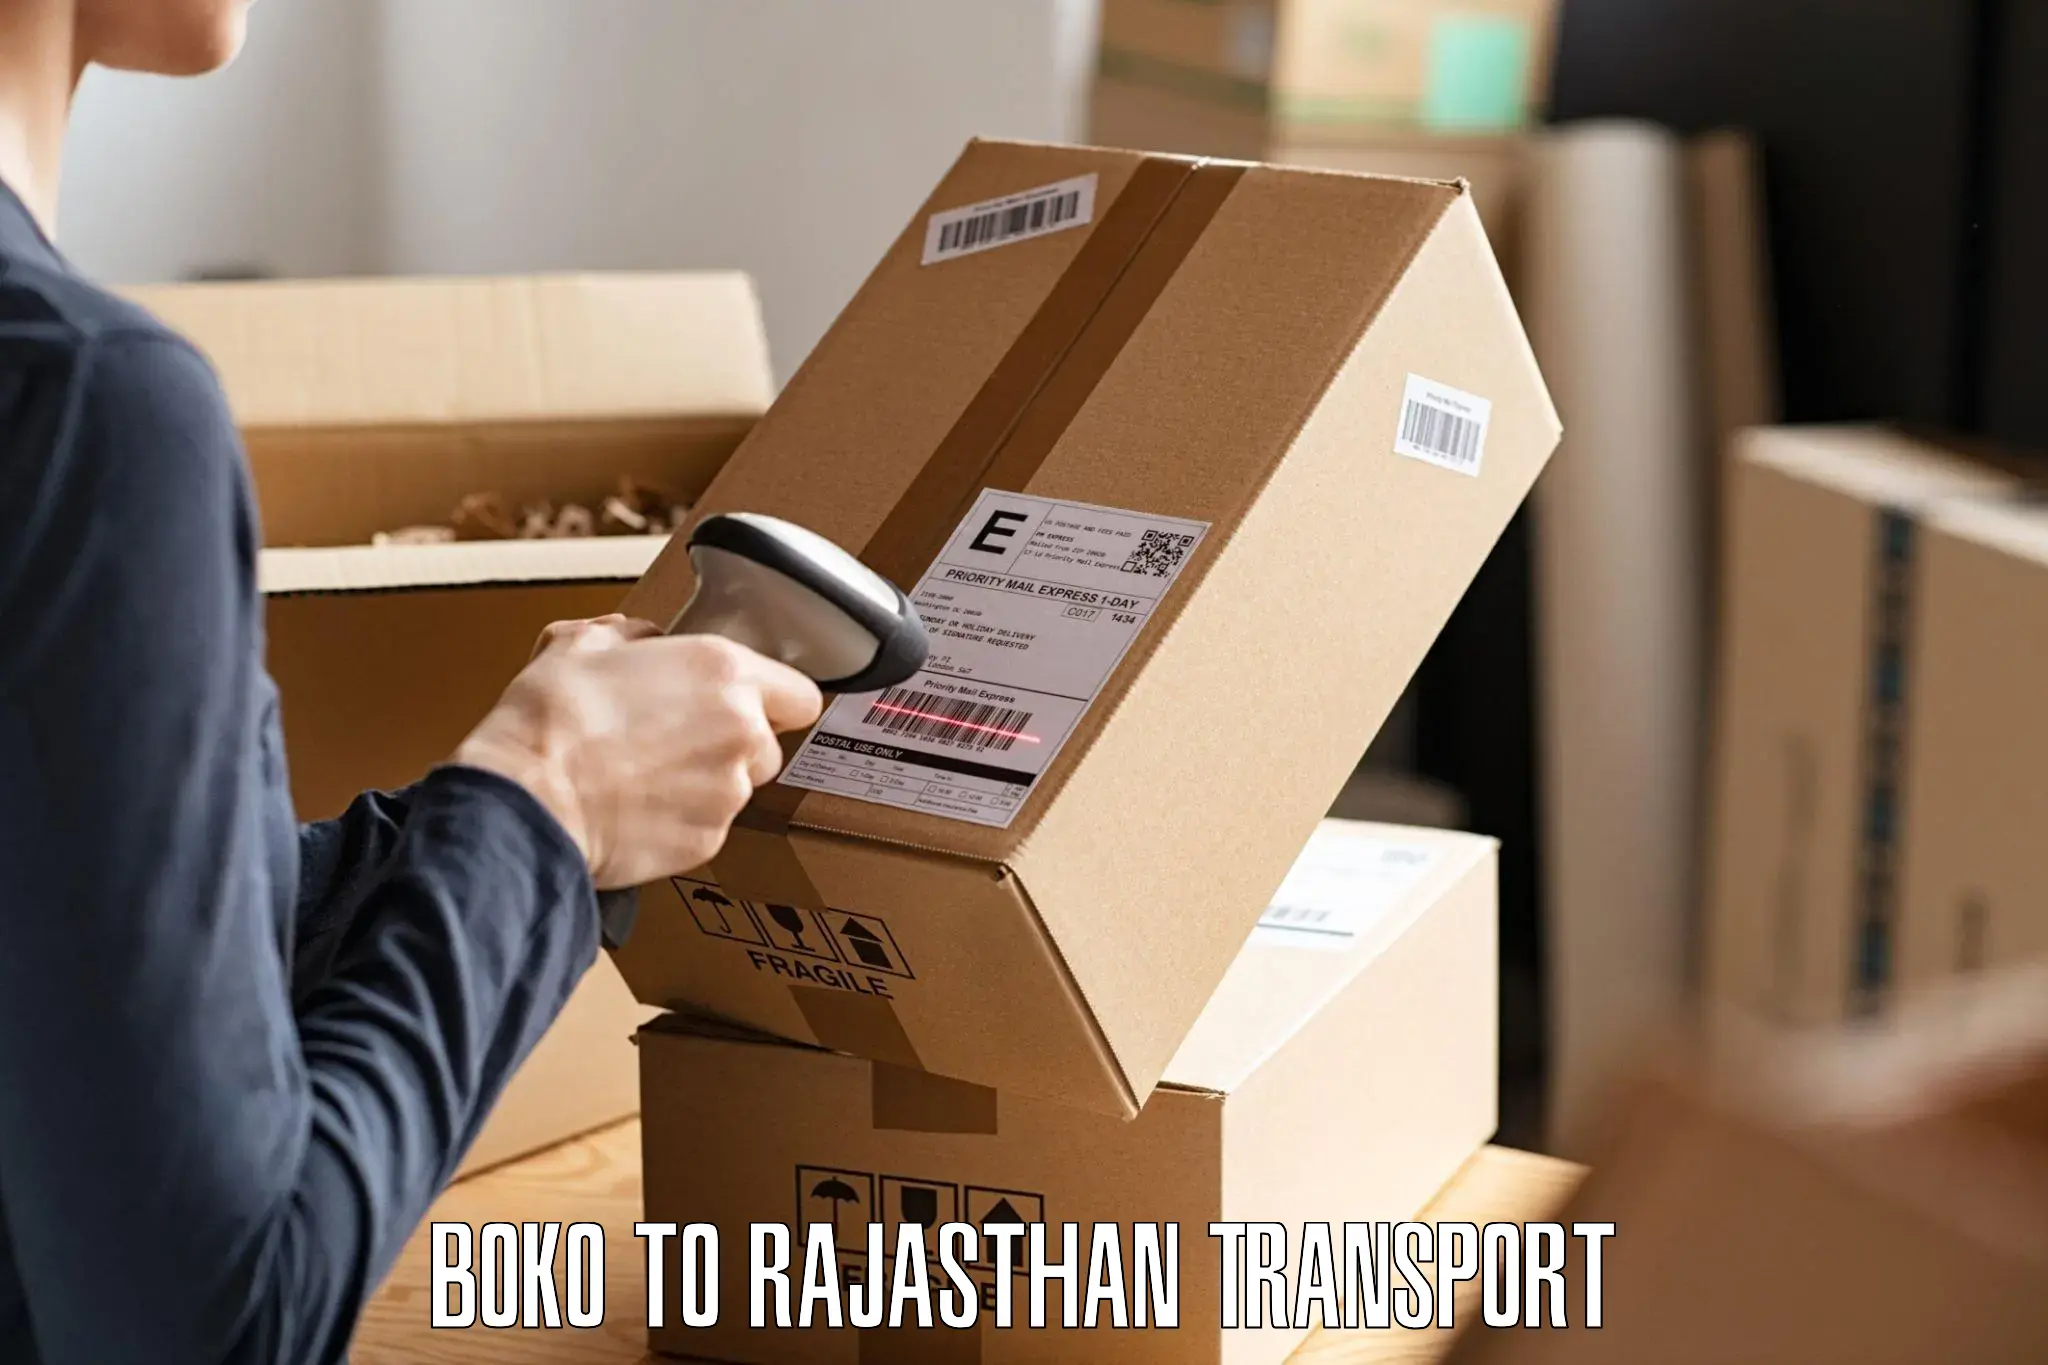 Nearby transport service Boko to Pratapgarh Rajasthan